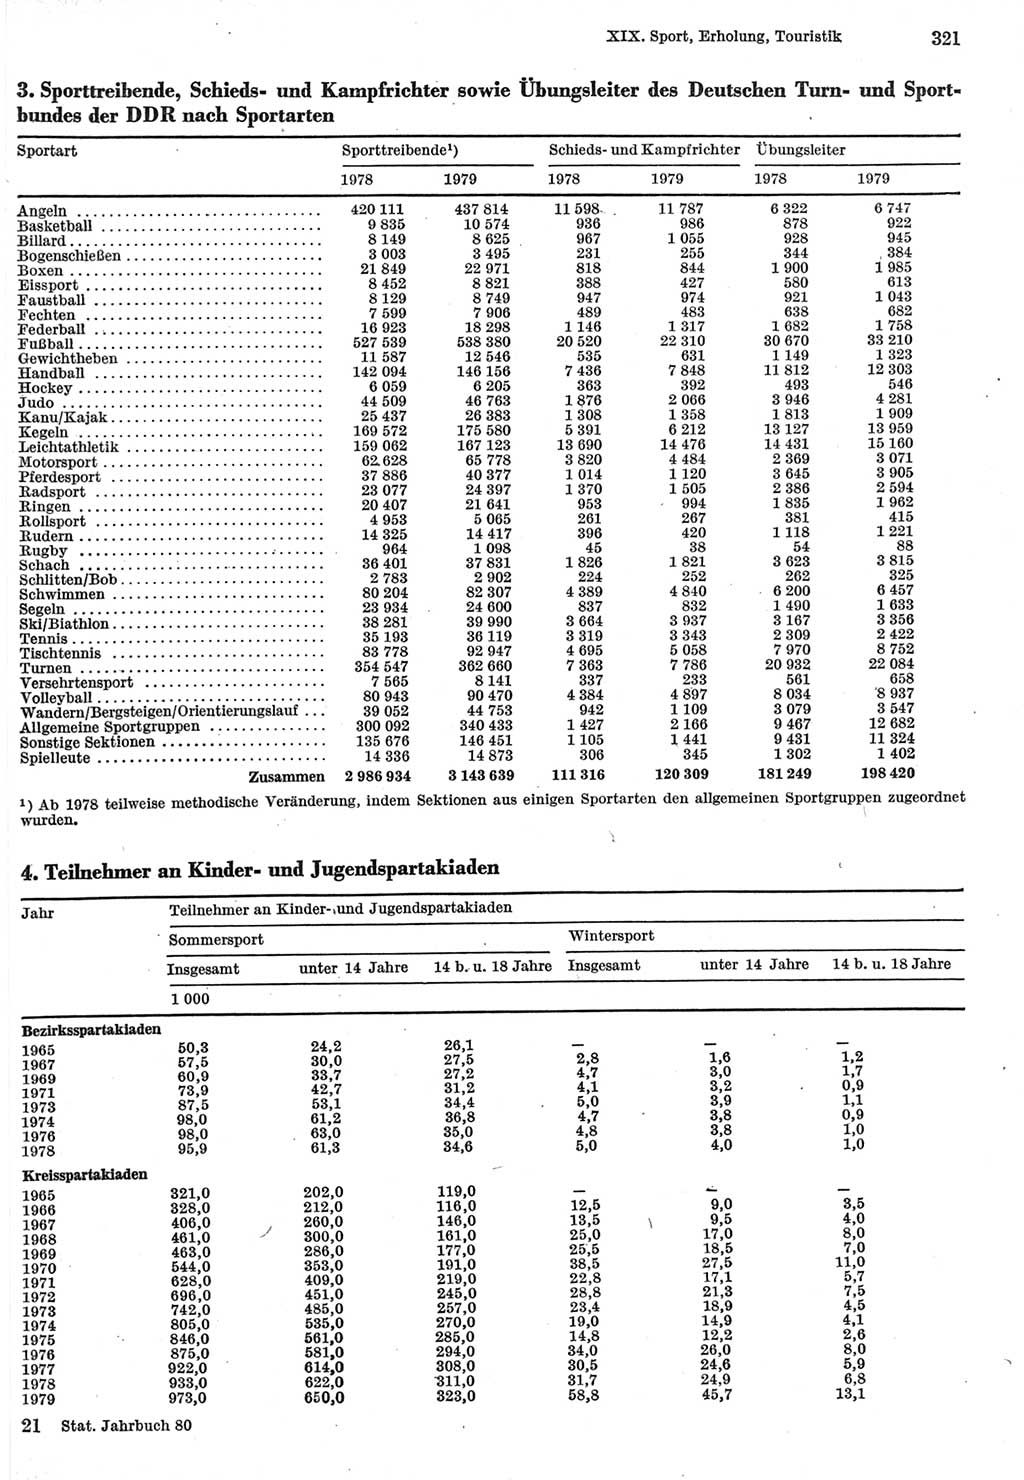 Statistisches Jahrbuch der Deutschen Demokratischen Republik (DDR) 1980, Seite 321 (Stat. Jb. DDR 1980, S. 321)